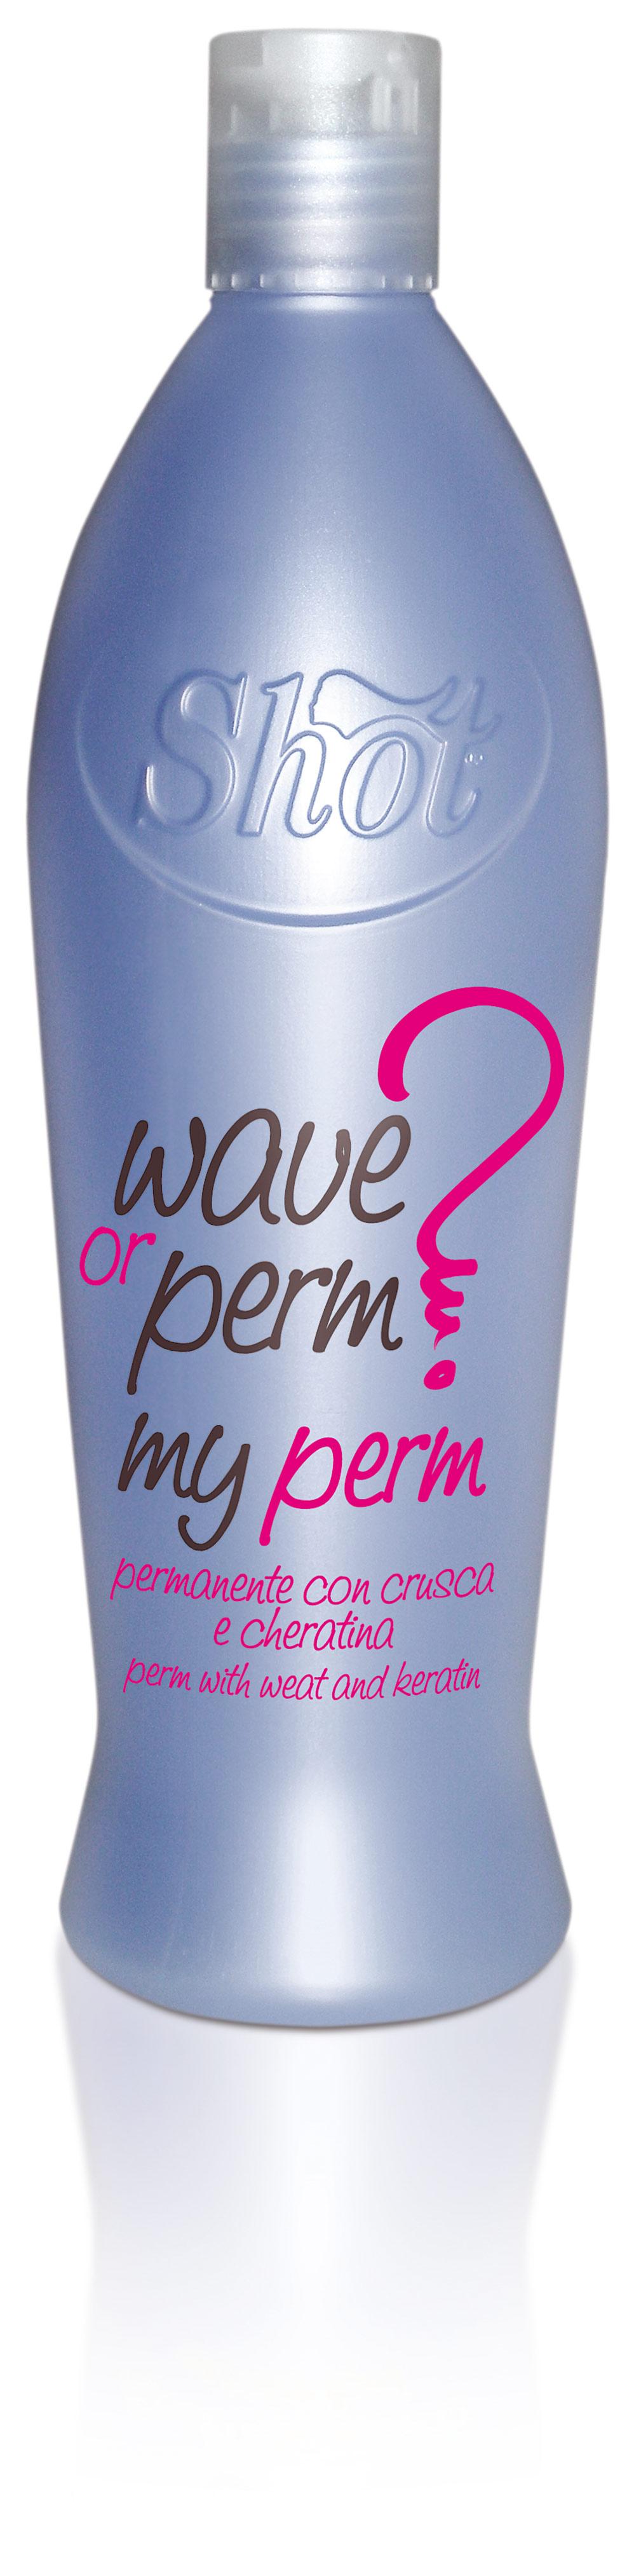 Wave or Perm MyPerm